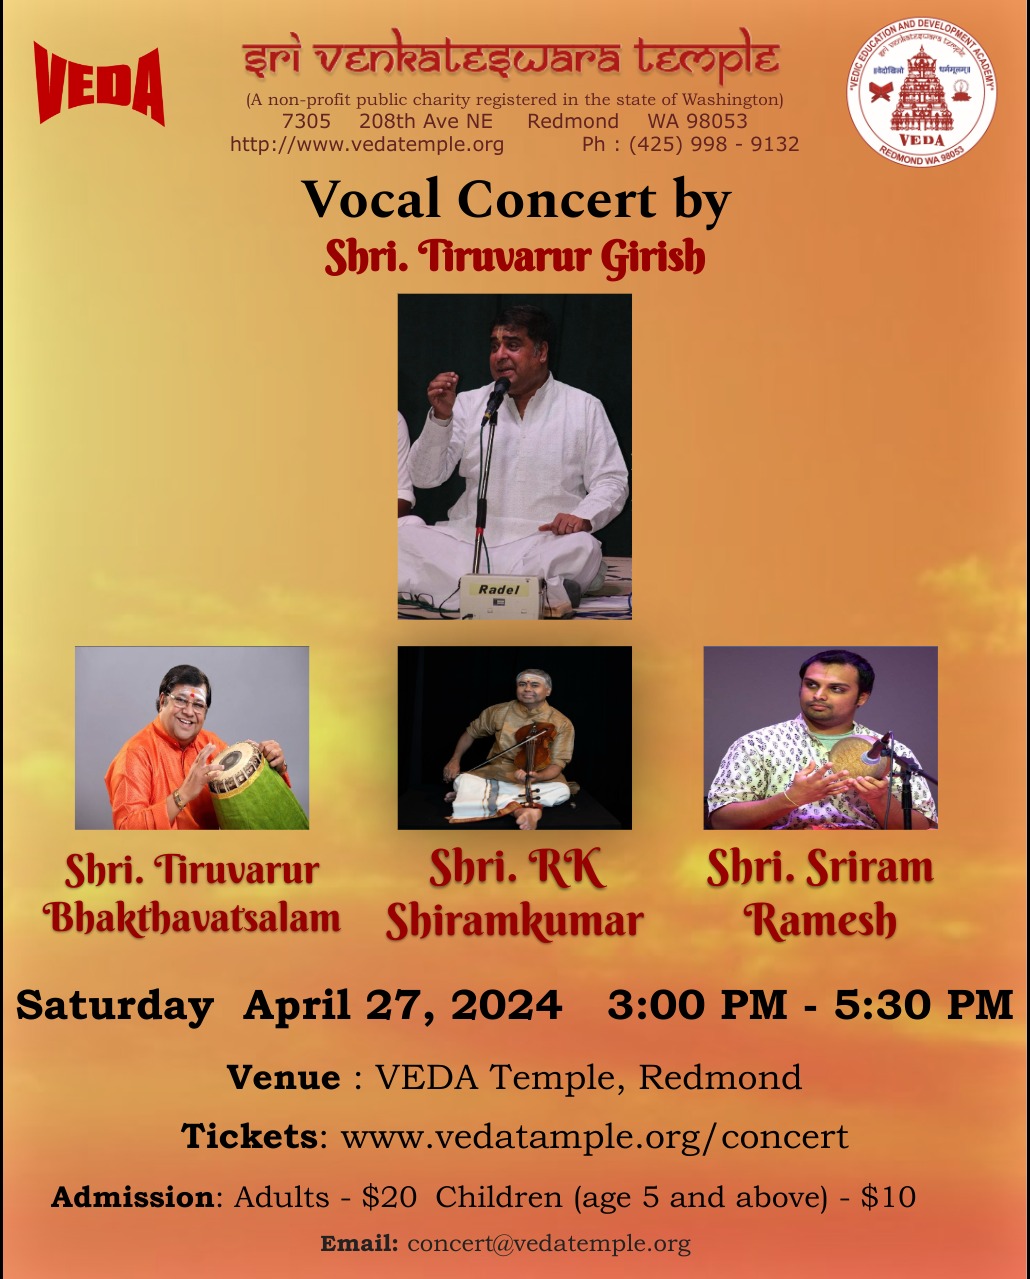 Vocal Concert by Shri.Tiruvarur Girish -Apr 27